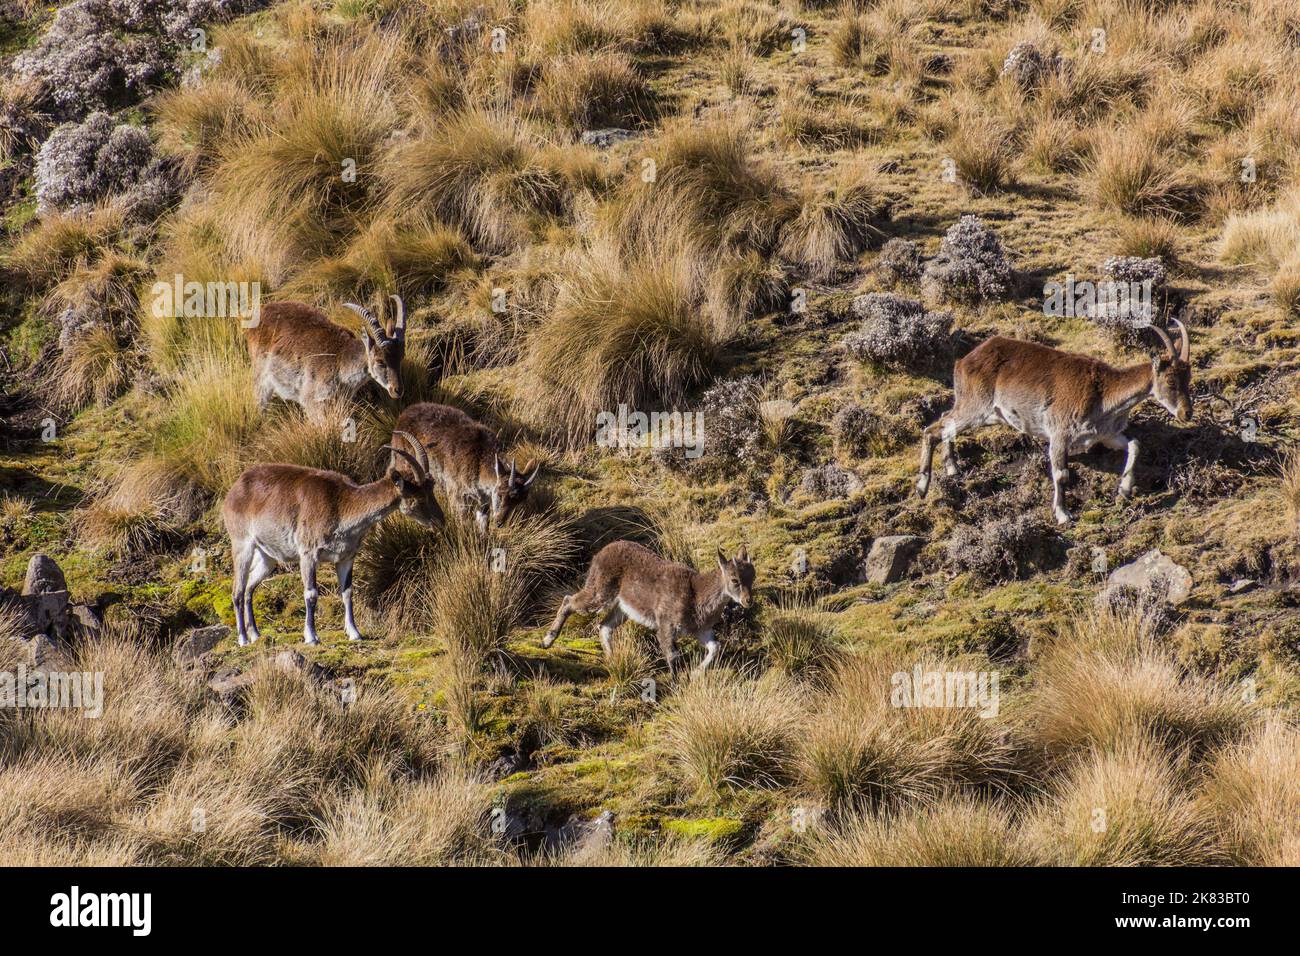 Walia ibexes (Capra walie) in Simien mountains, Ethiopia Stock Photo